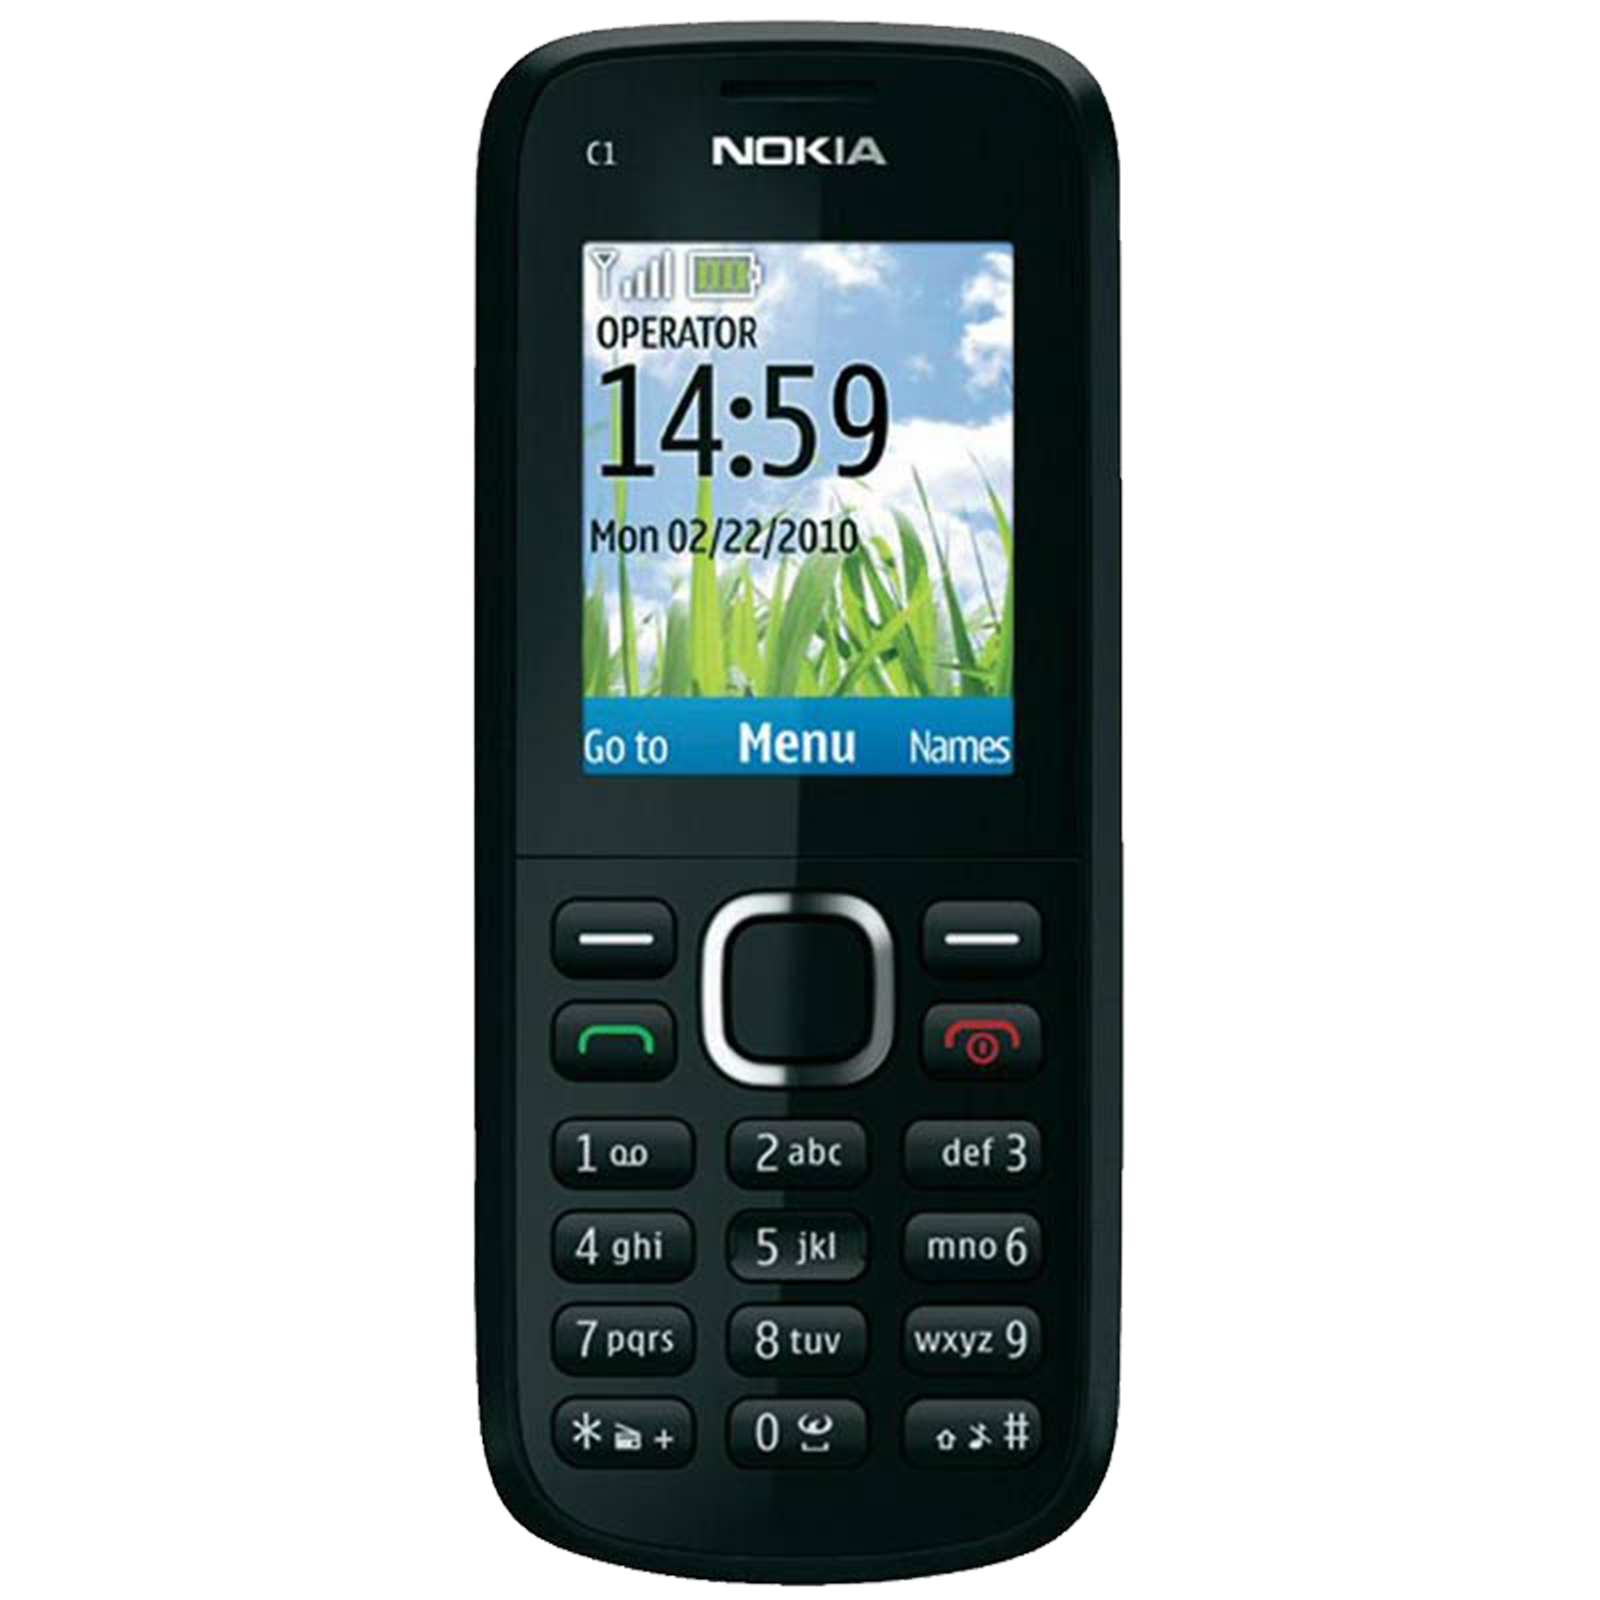 Nokia C1-02 (16MB, Dual SIM, Stereo FM Radio, Black)_1